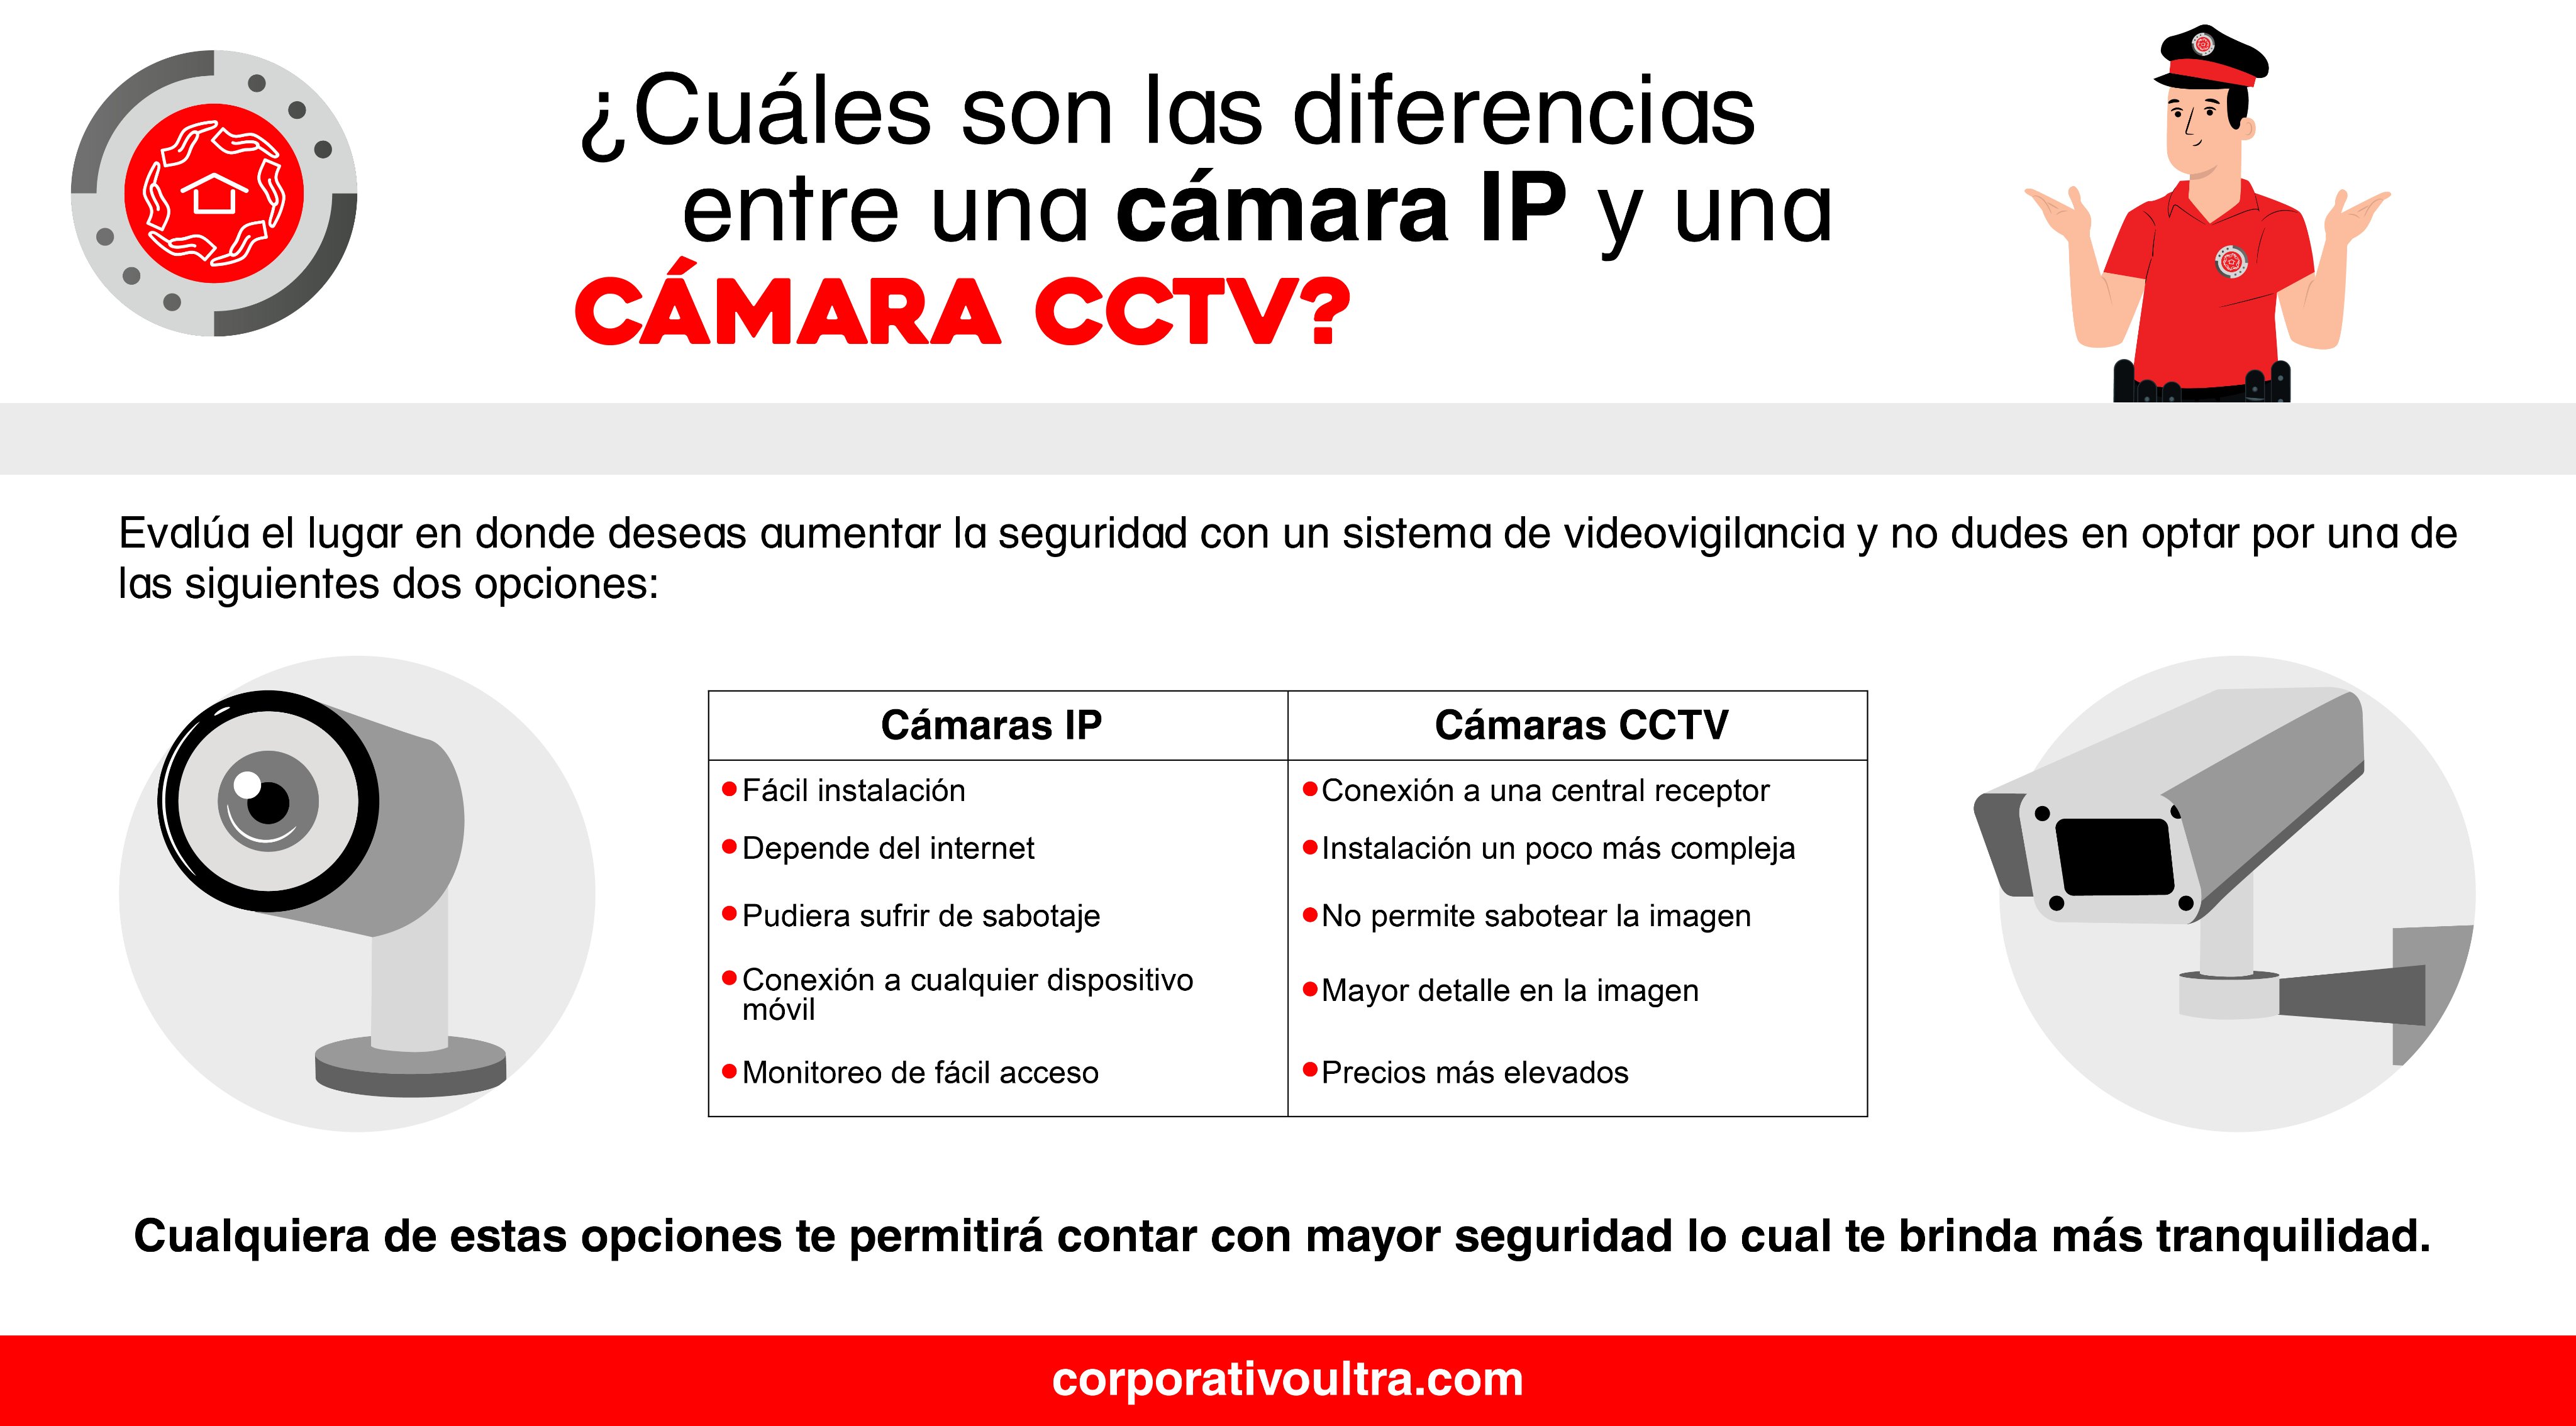 Corporativo Ultra on Twitter: "¿Necesitas una cámara de seguridad pero no que tecnología escoger? 🤔 Te contamos algunas diferencias entre camaras IP y CCTV 🙌😉 #Ultra #Seguridad #SeguridadPrivada #camara # cctv #